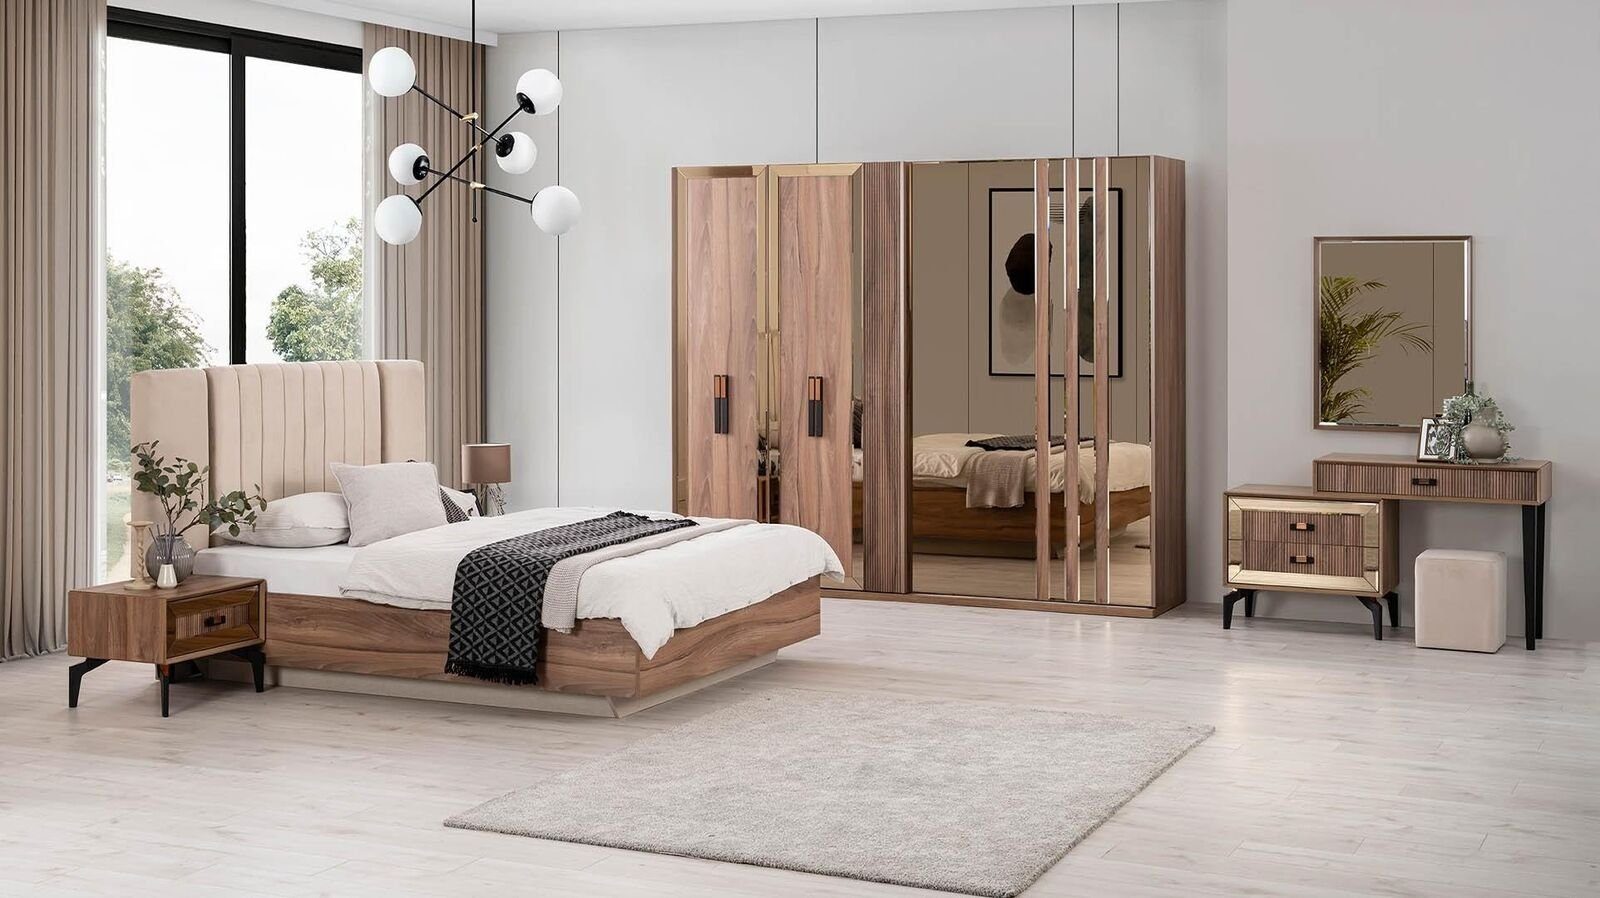 JVmoebel Schlafzimmer-Set Luxus Doppelbett Schlafzimmer Garnitur Bett Holz Set 7tlg Braun Modern, (Bett / Nachttische / Kleiderschrank / Kommode / Spiegel / Hocker), Made In Europe